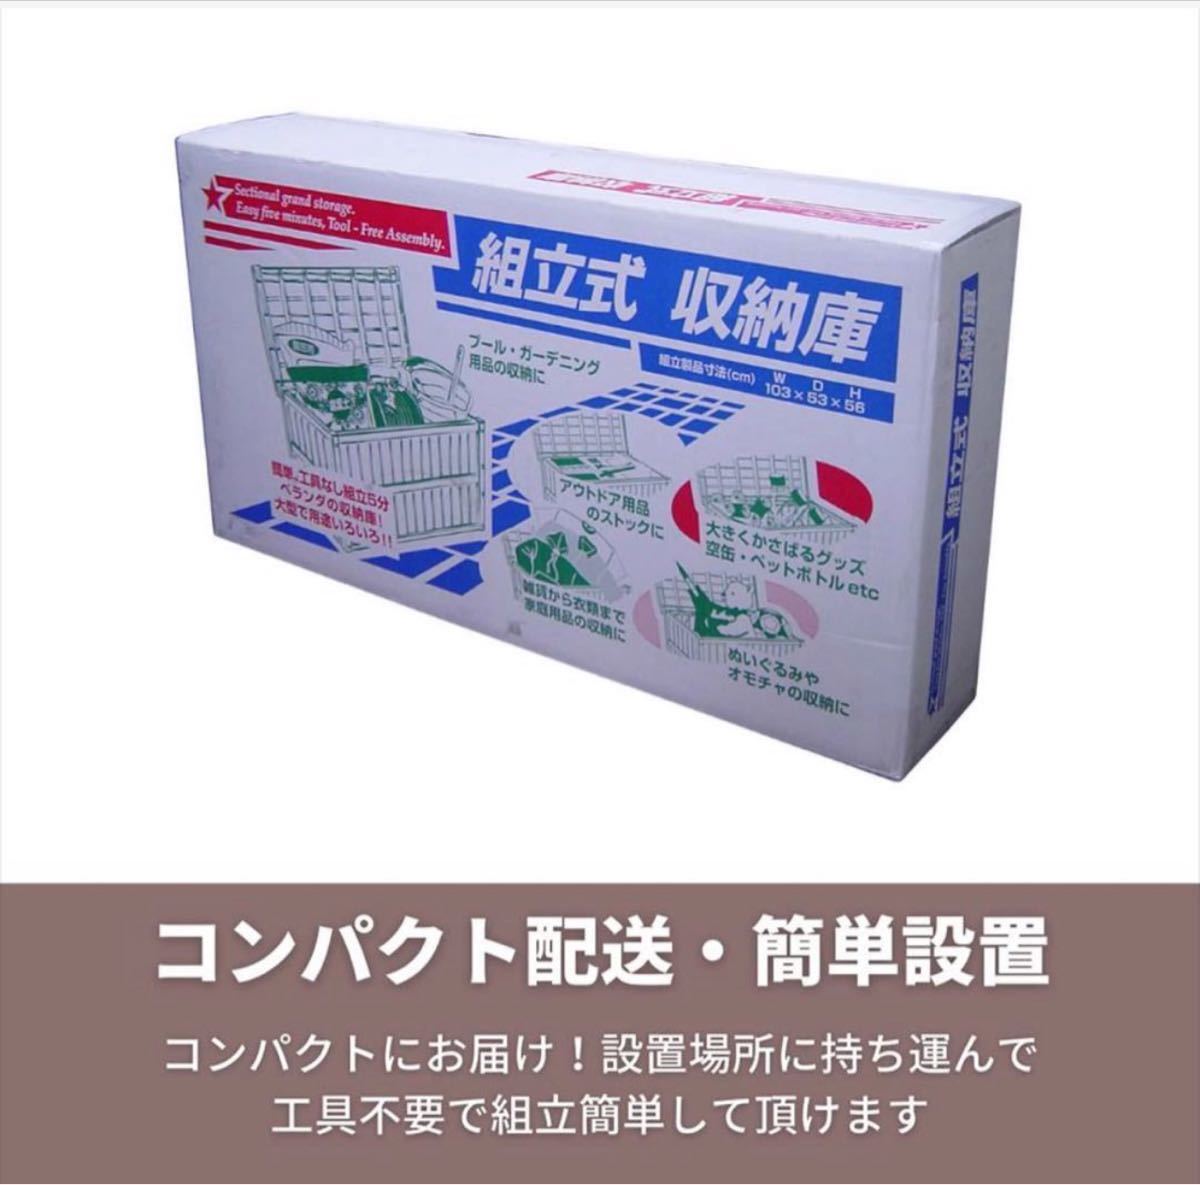 [ новый товар не использовался ] большая вместимость шкаф 200L сборка тип наружный место хранения box сделано в Японии 